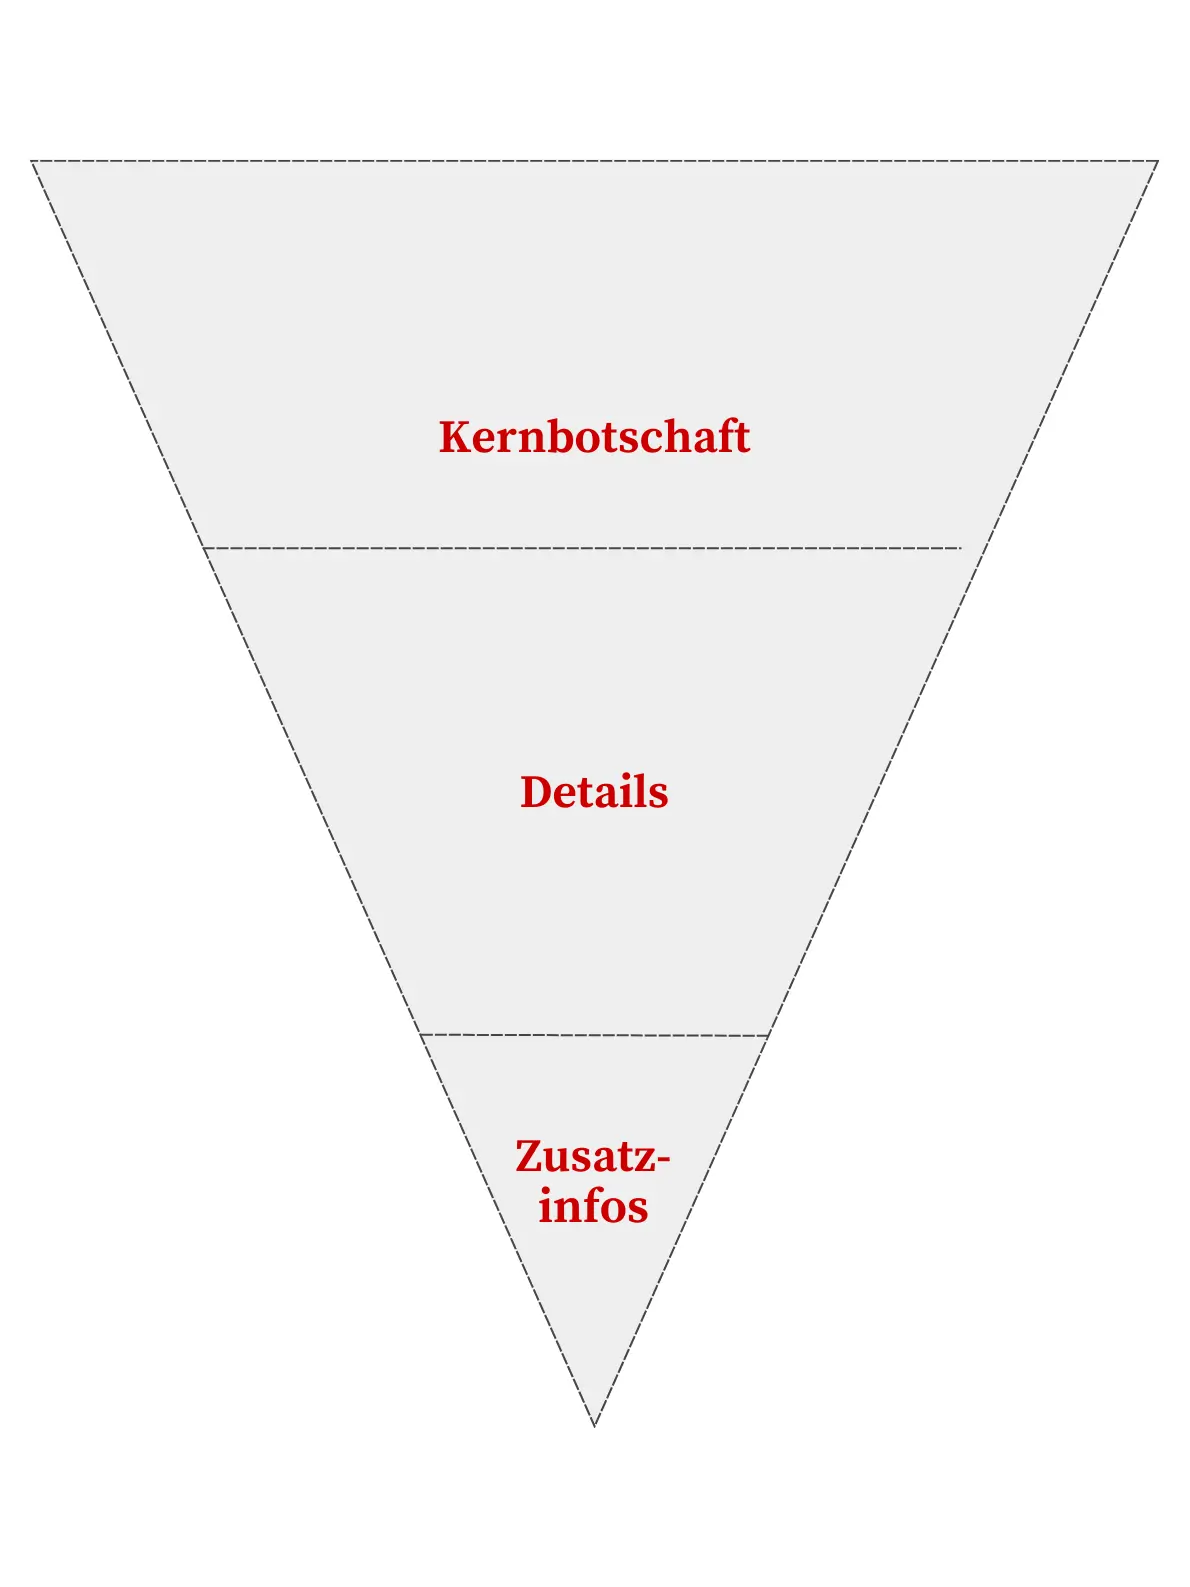 Pressetext-Struktur als umgedrehte Pyramide - Grafik (c) tautscher.net